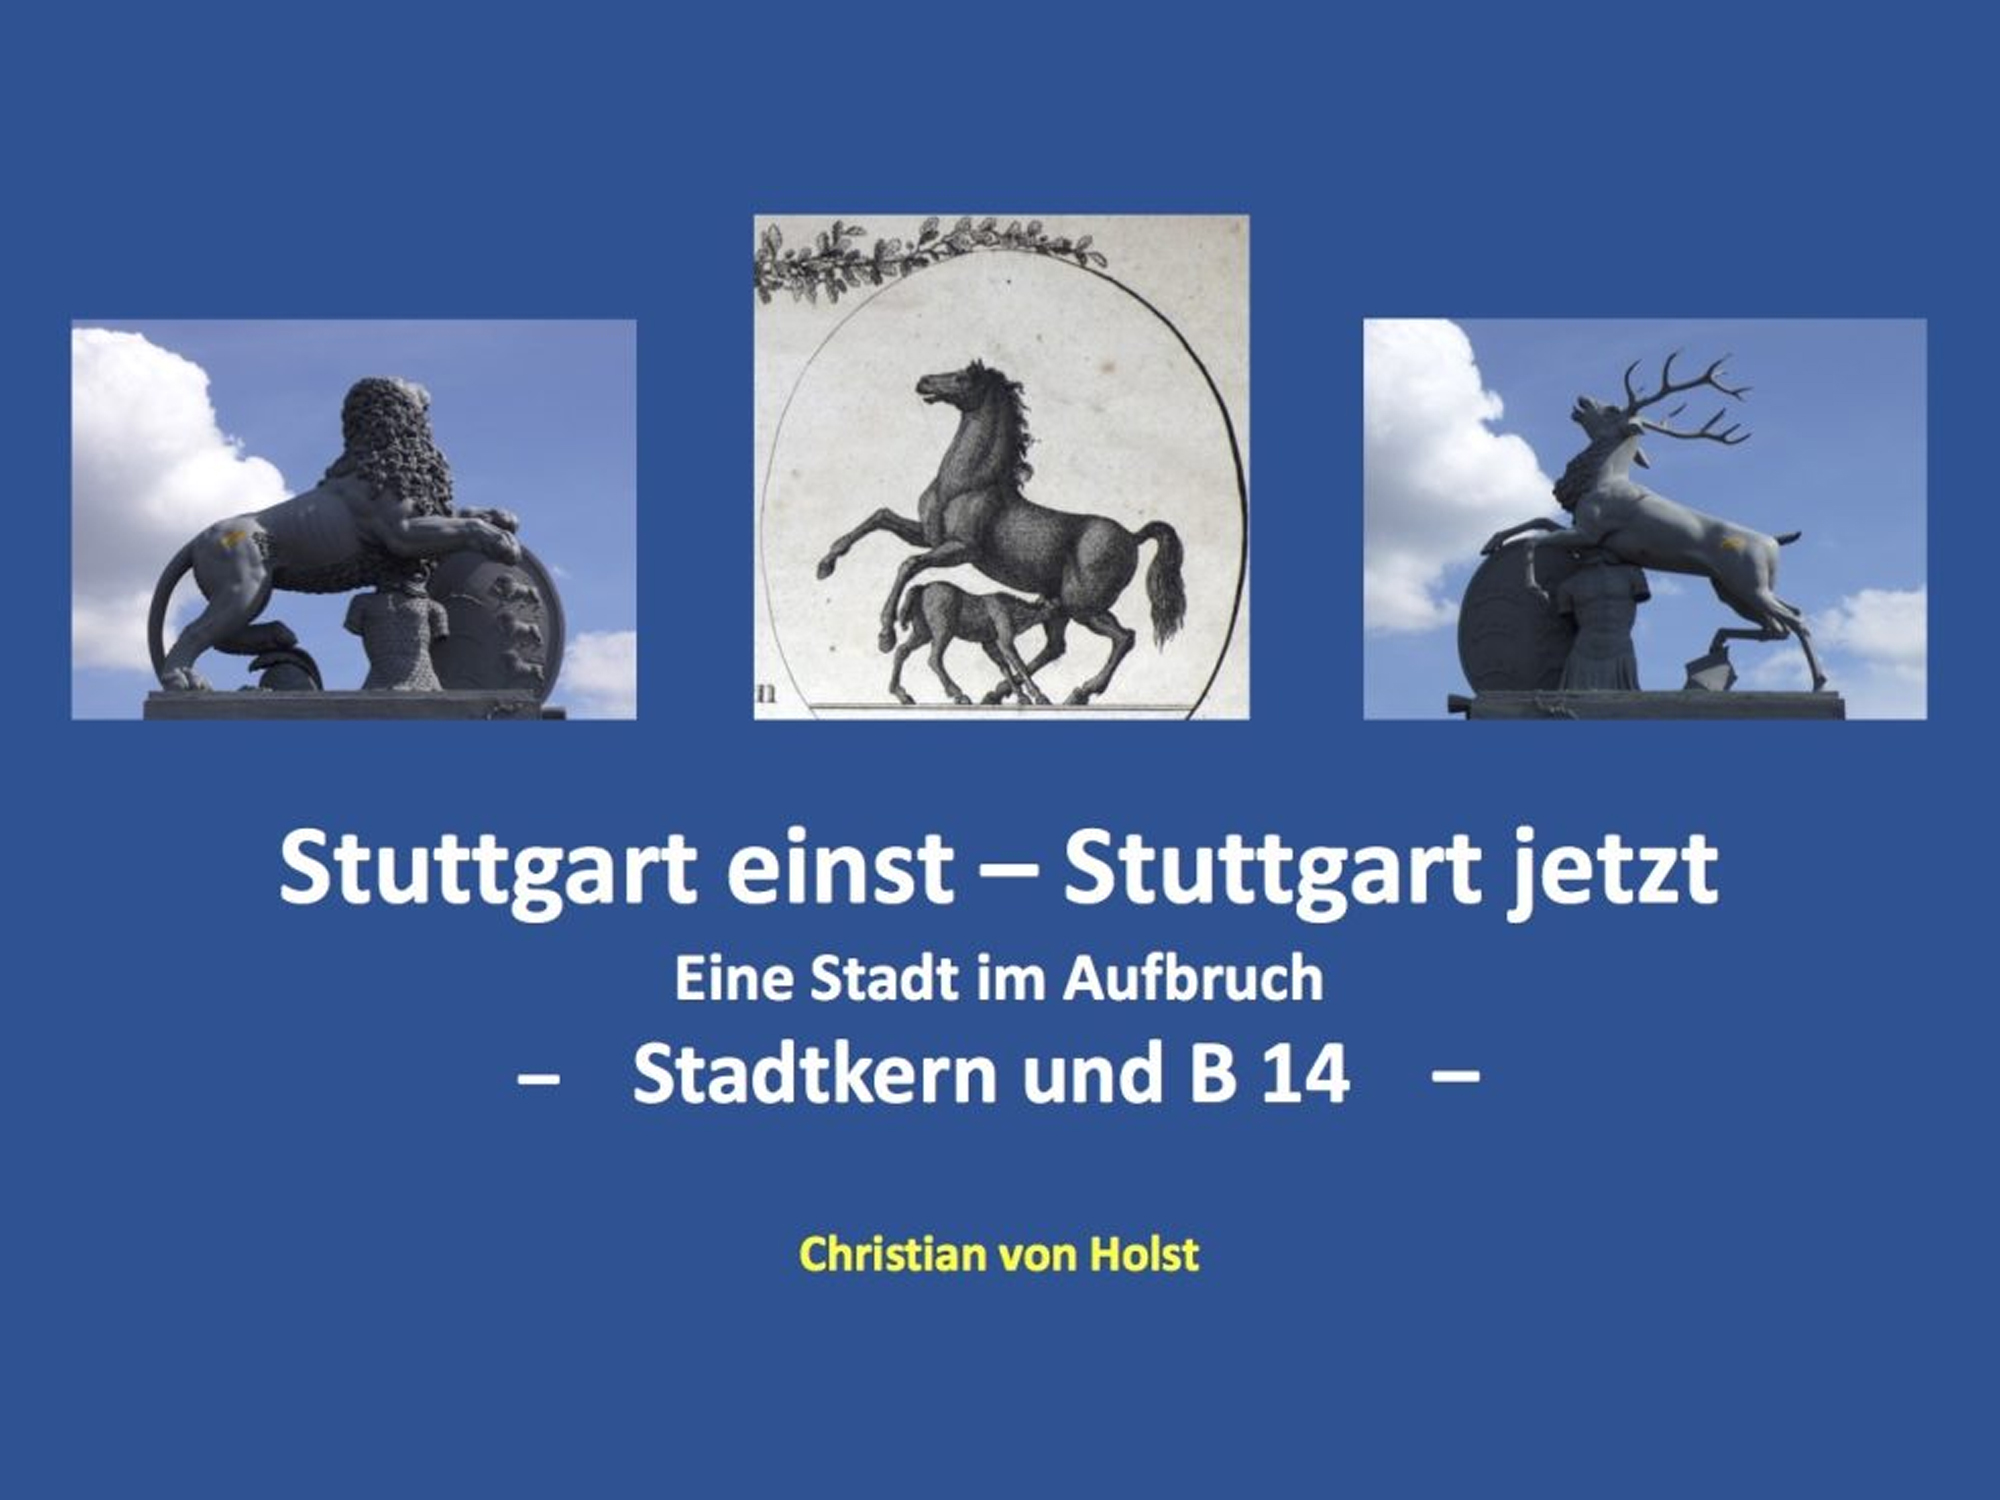 Christian von Holst - Vortrag - Stuttgart einst - Stuttgart jetzt